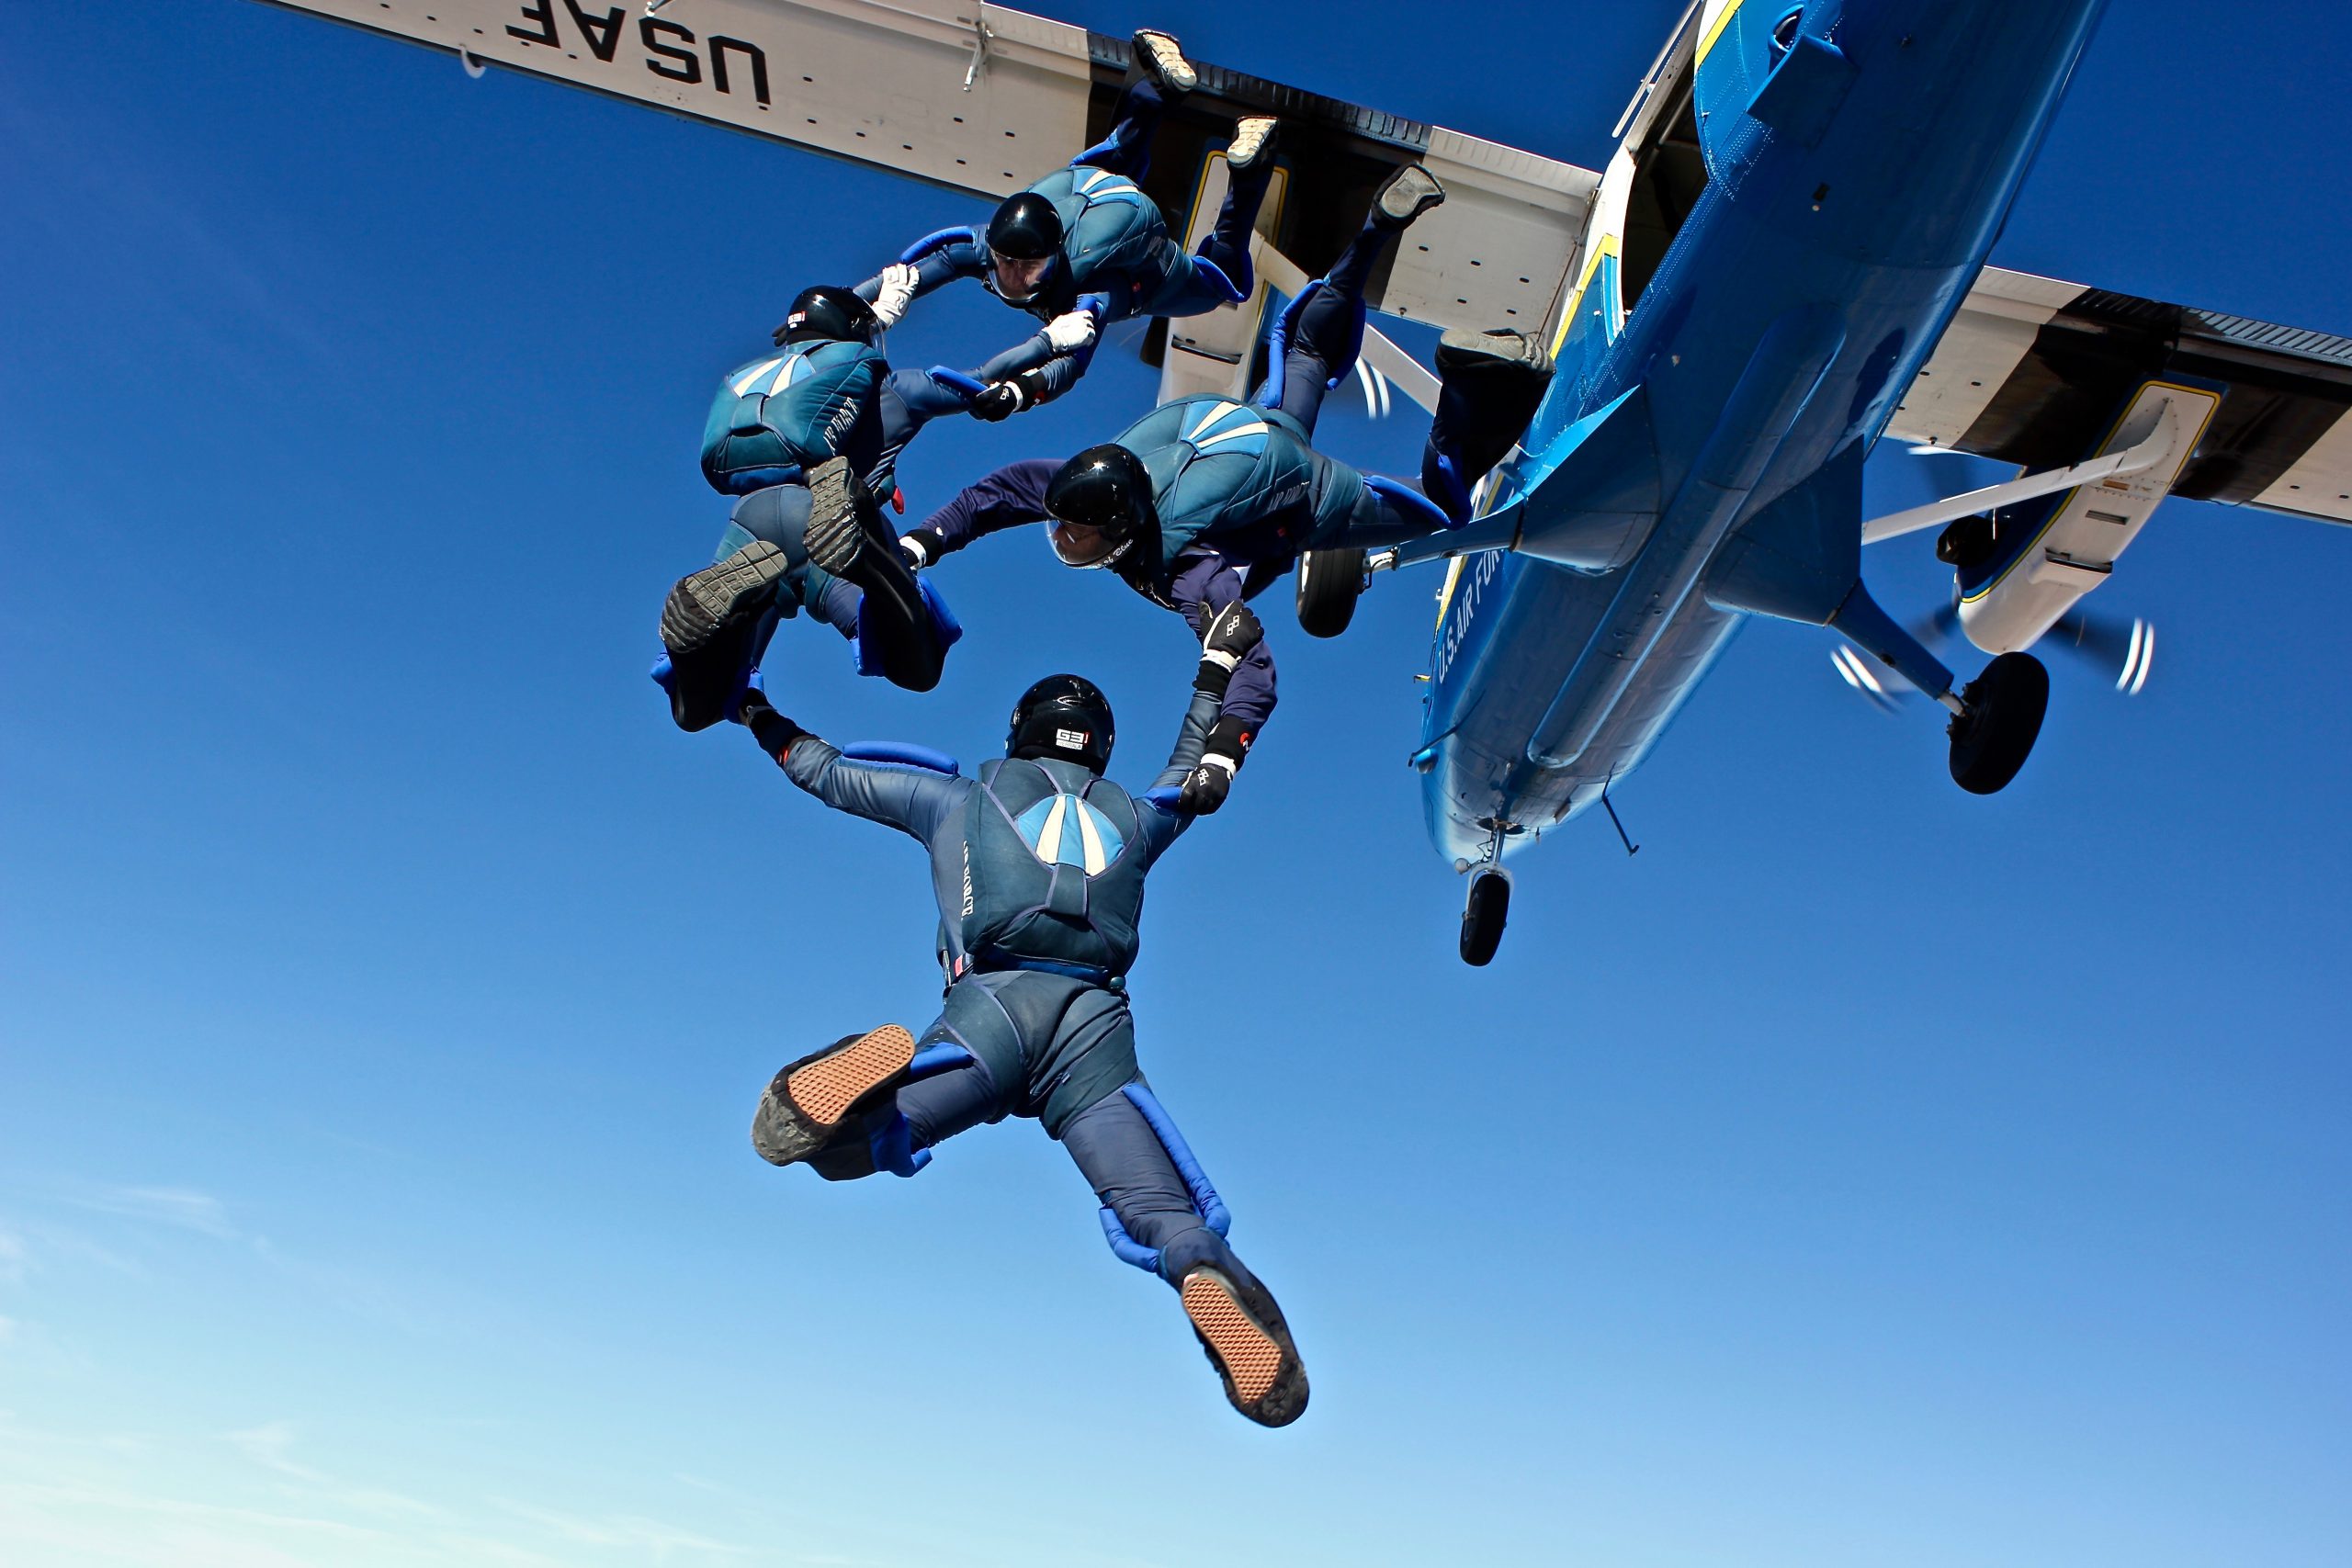 wings of blue skydiving jumpsuit